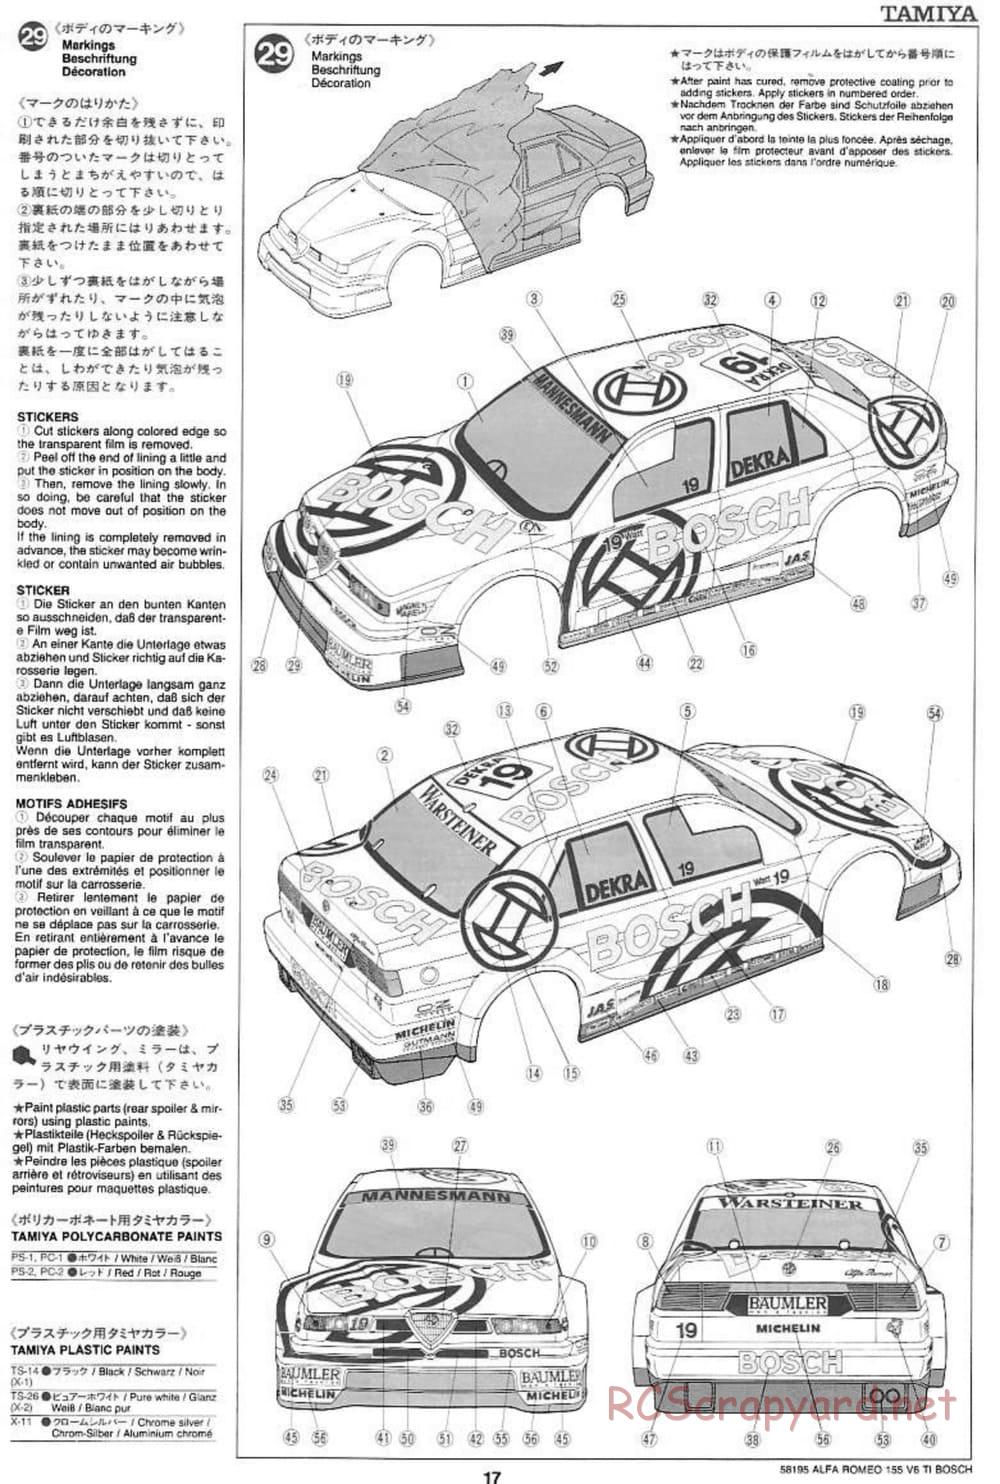 Tamiya - Alfa Romeo 155 V6 TI BOSCH - TL-01 Chassis - Manual - Page 17